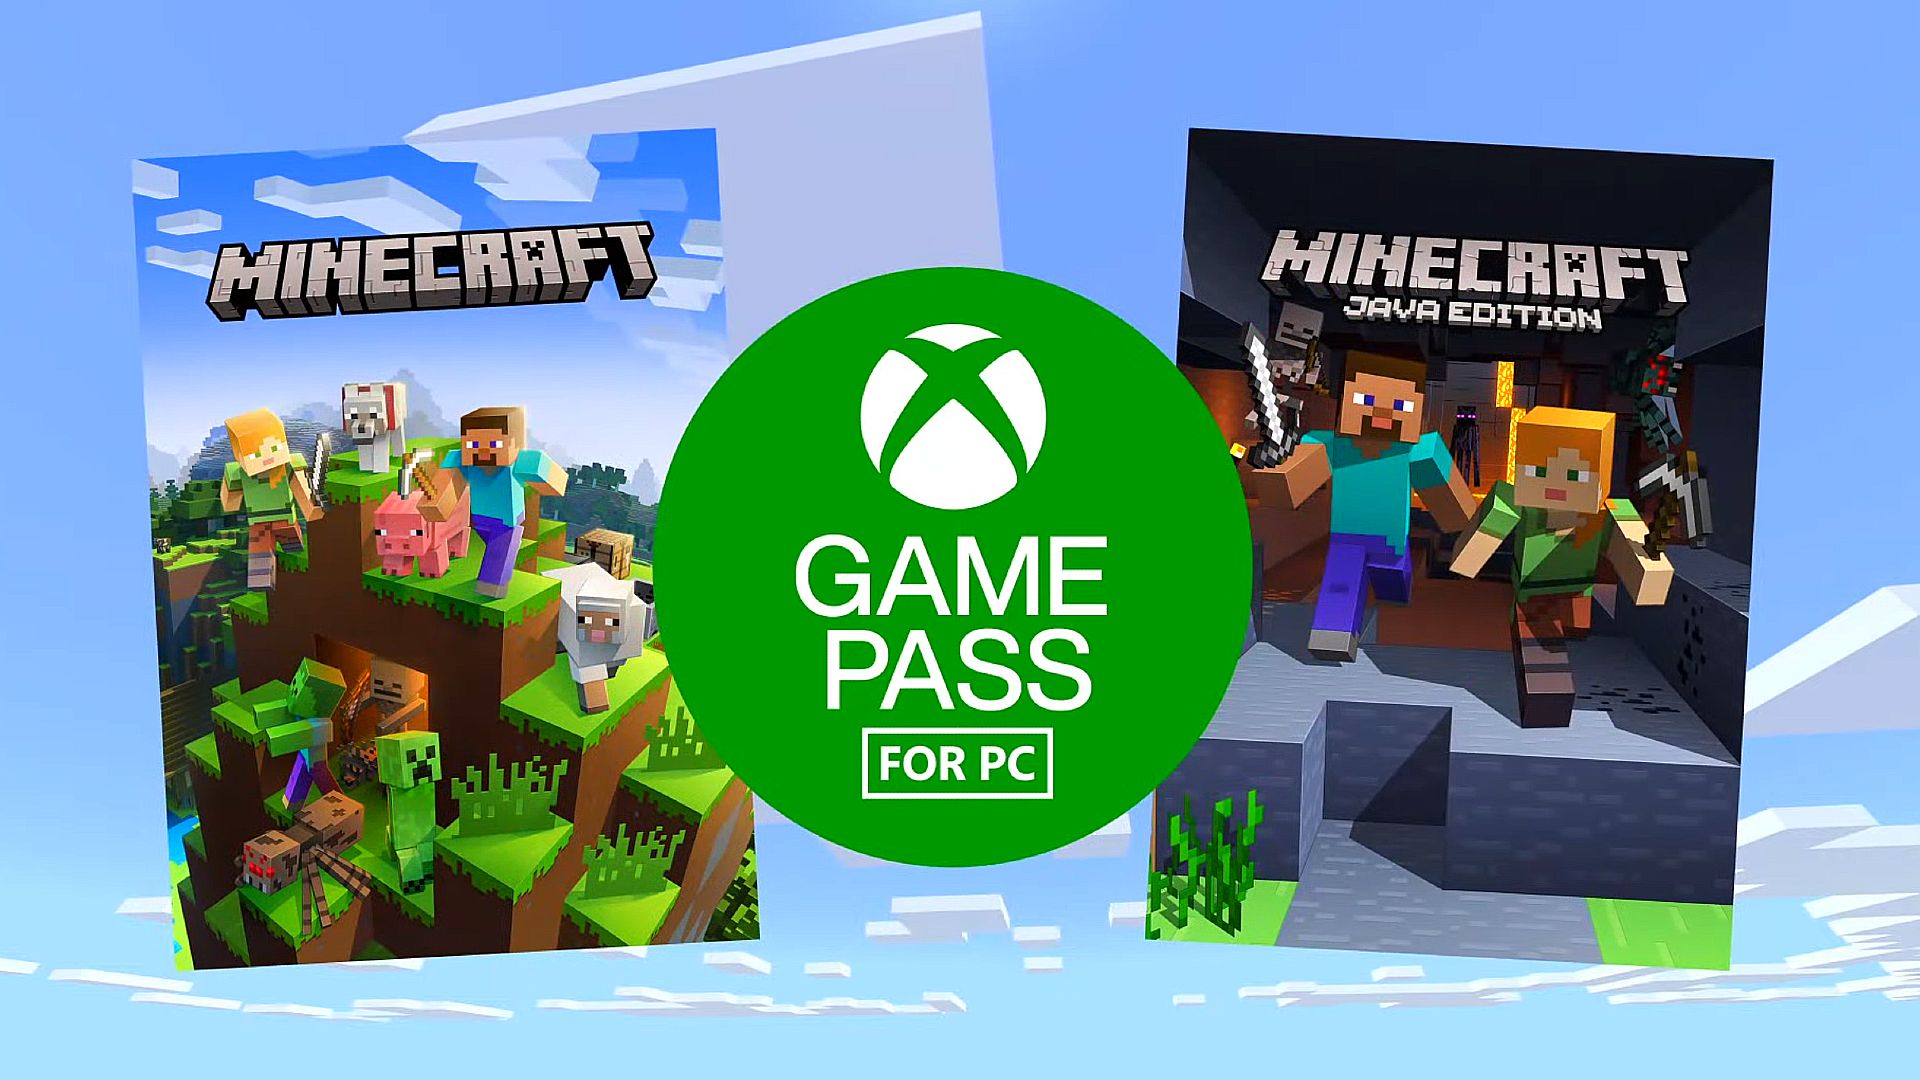 Versioni i mirë i Minecraft po vjen në Game Pass PC, por jo GTA: San Andreas